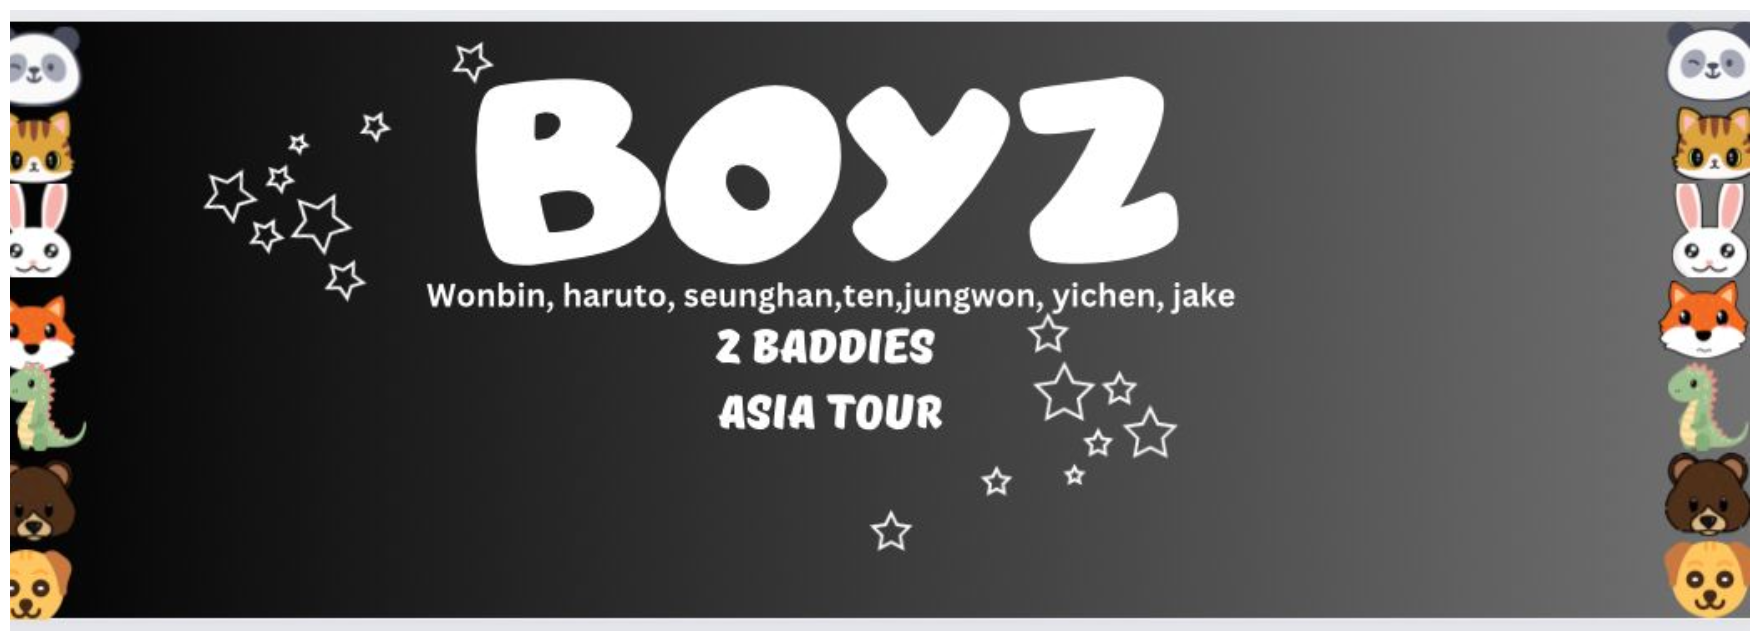 1st Tour in Asia! 2 baddies asia tour